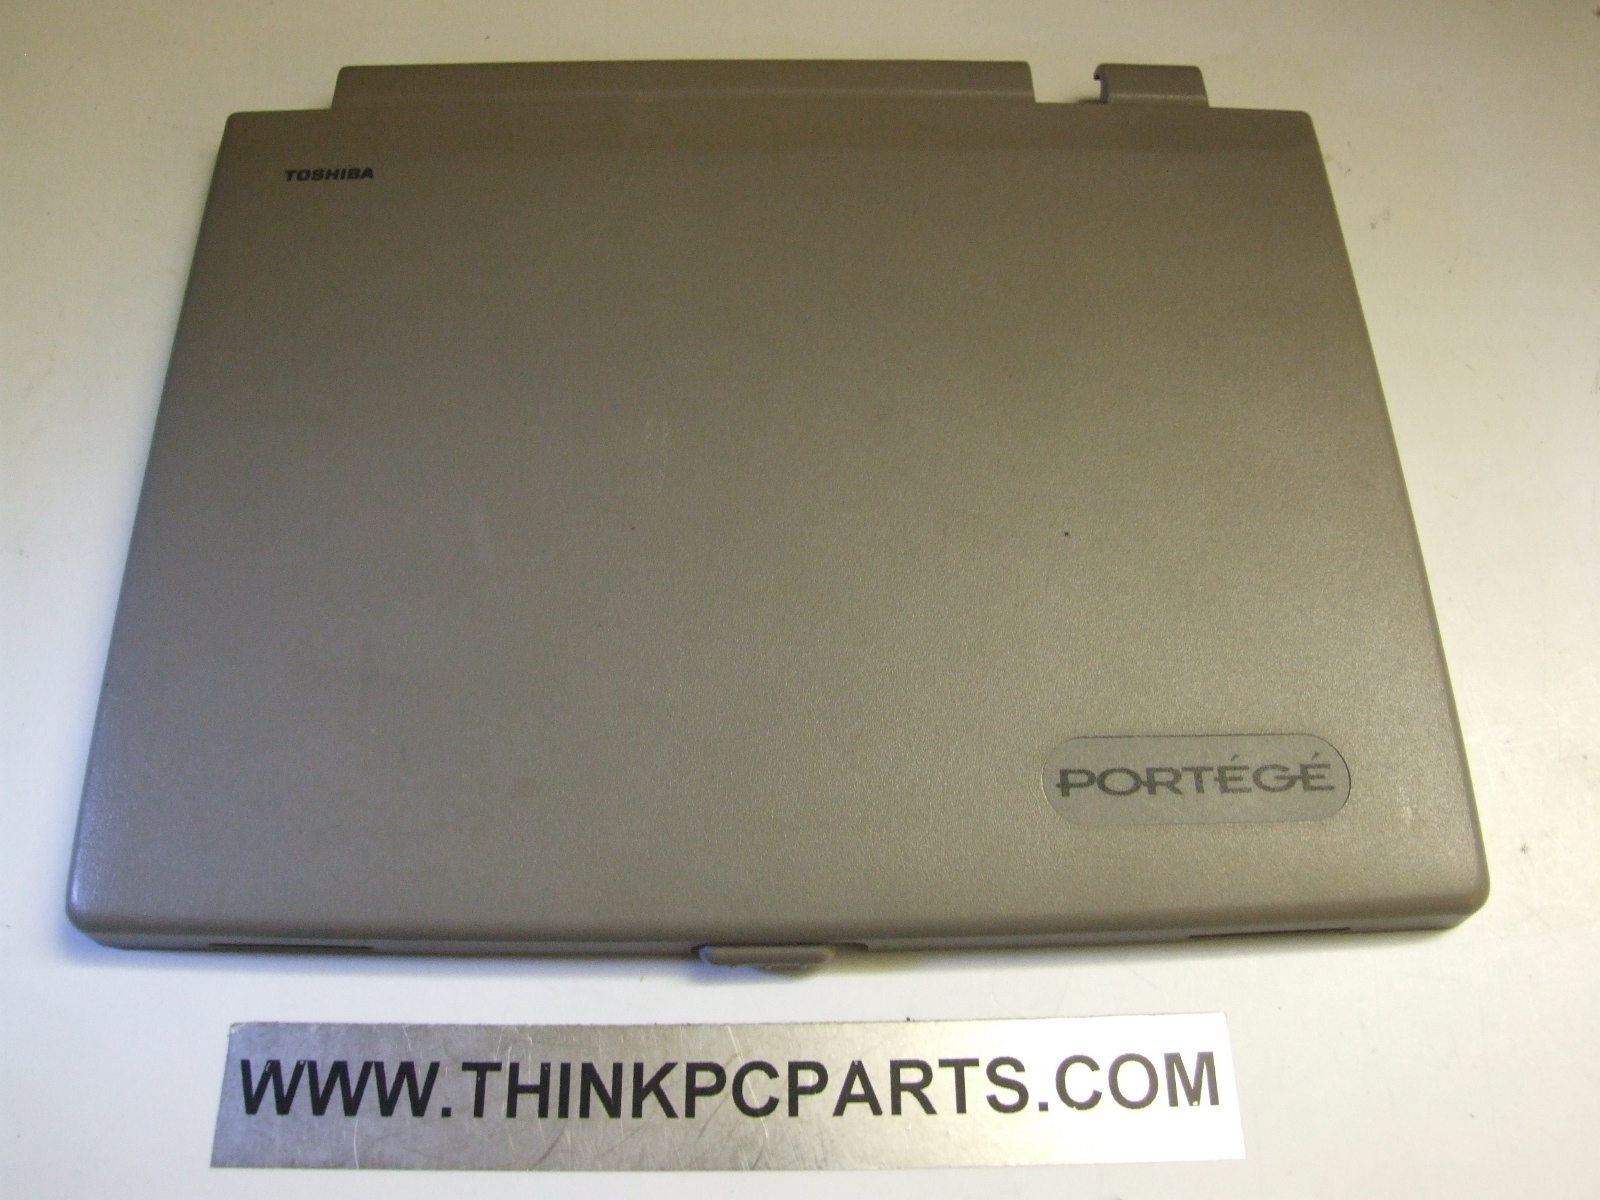 Hasil gambar untuk Toshiba Portege T3400